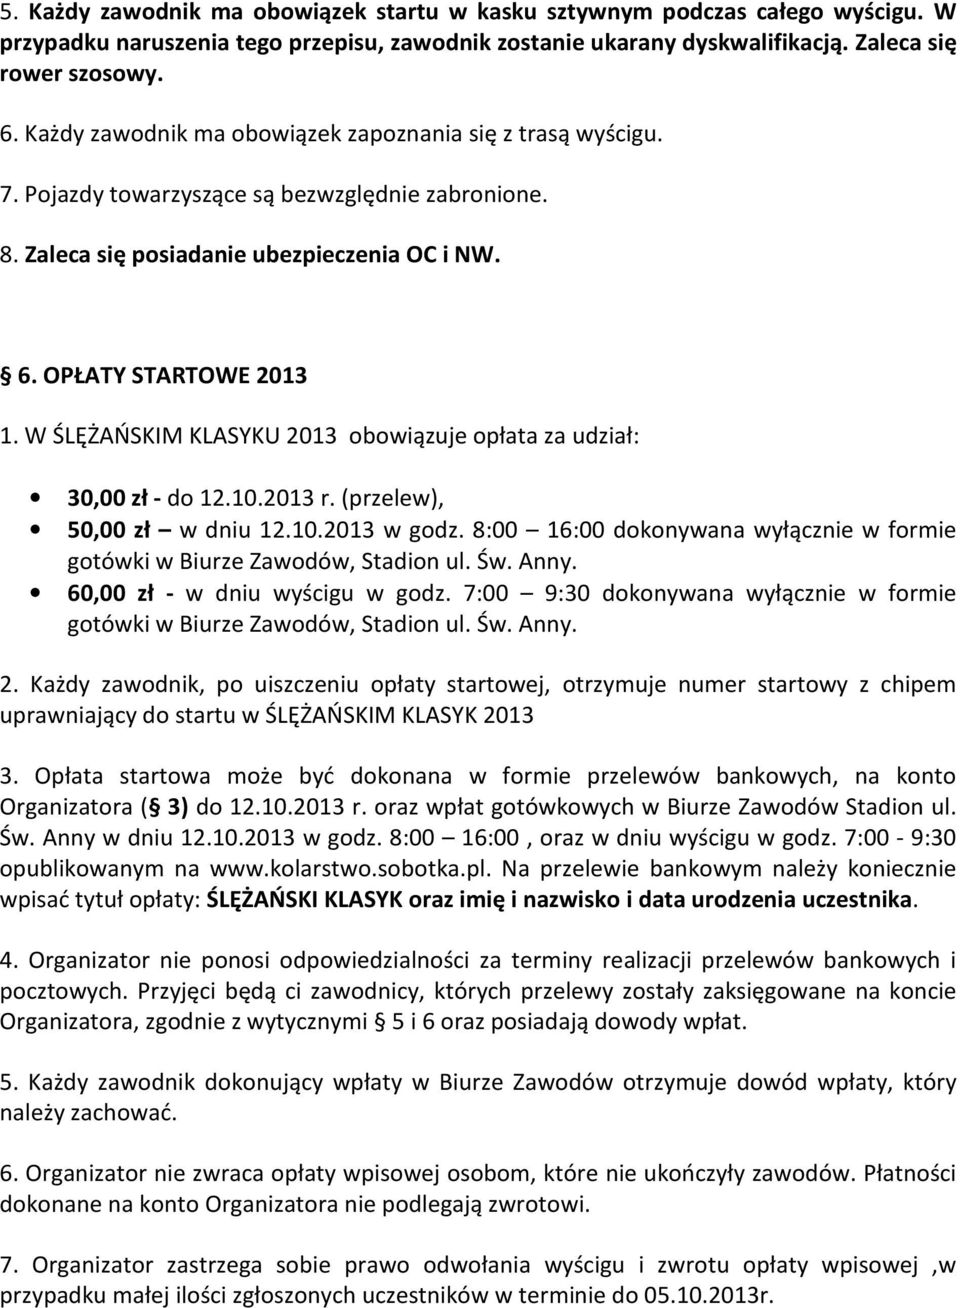 W ŚLĘŻAŃSKIM KLASYKU 2013 obowiązuje opłata za udział: 30,00 zł - do 12.10.2013 r. (przelew), 50,00 zł w dniu 12.10.2013 w godz.